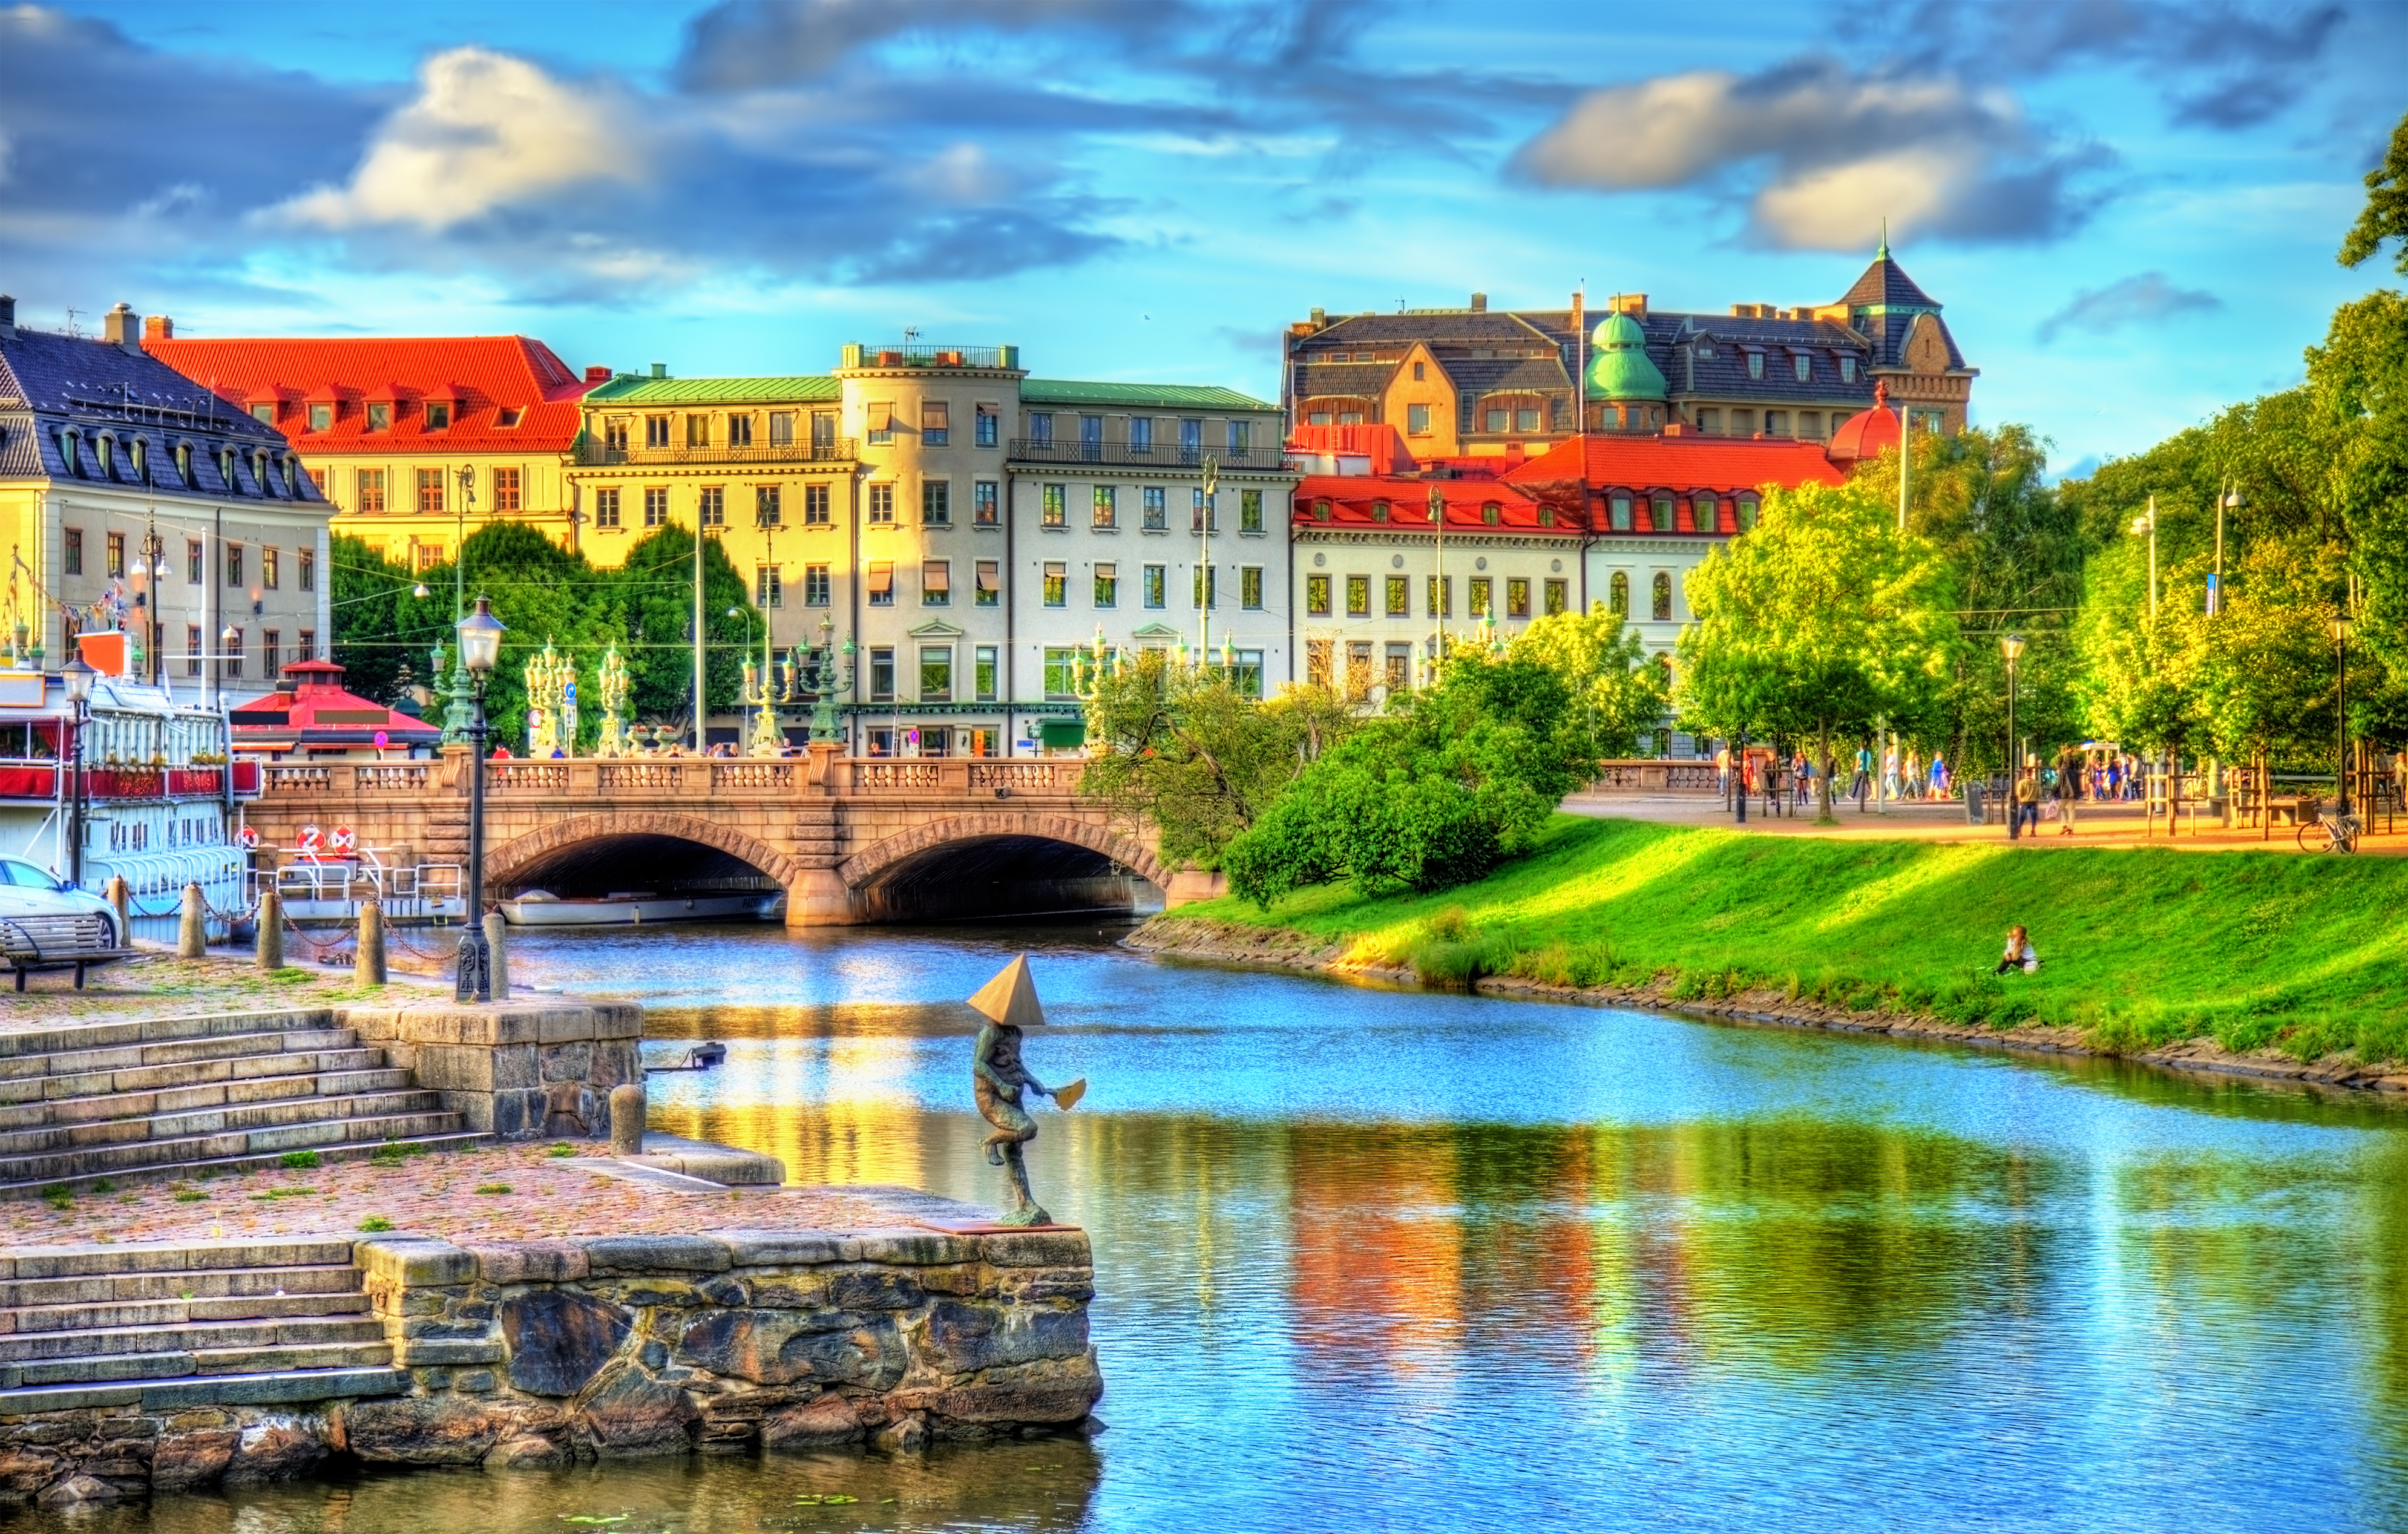 Гётеборг, город в Швеции, ПМЖ которой могут получить иностранцы